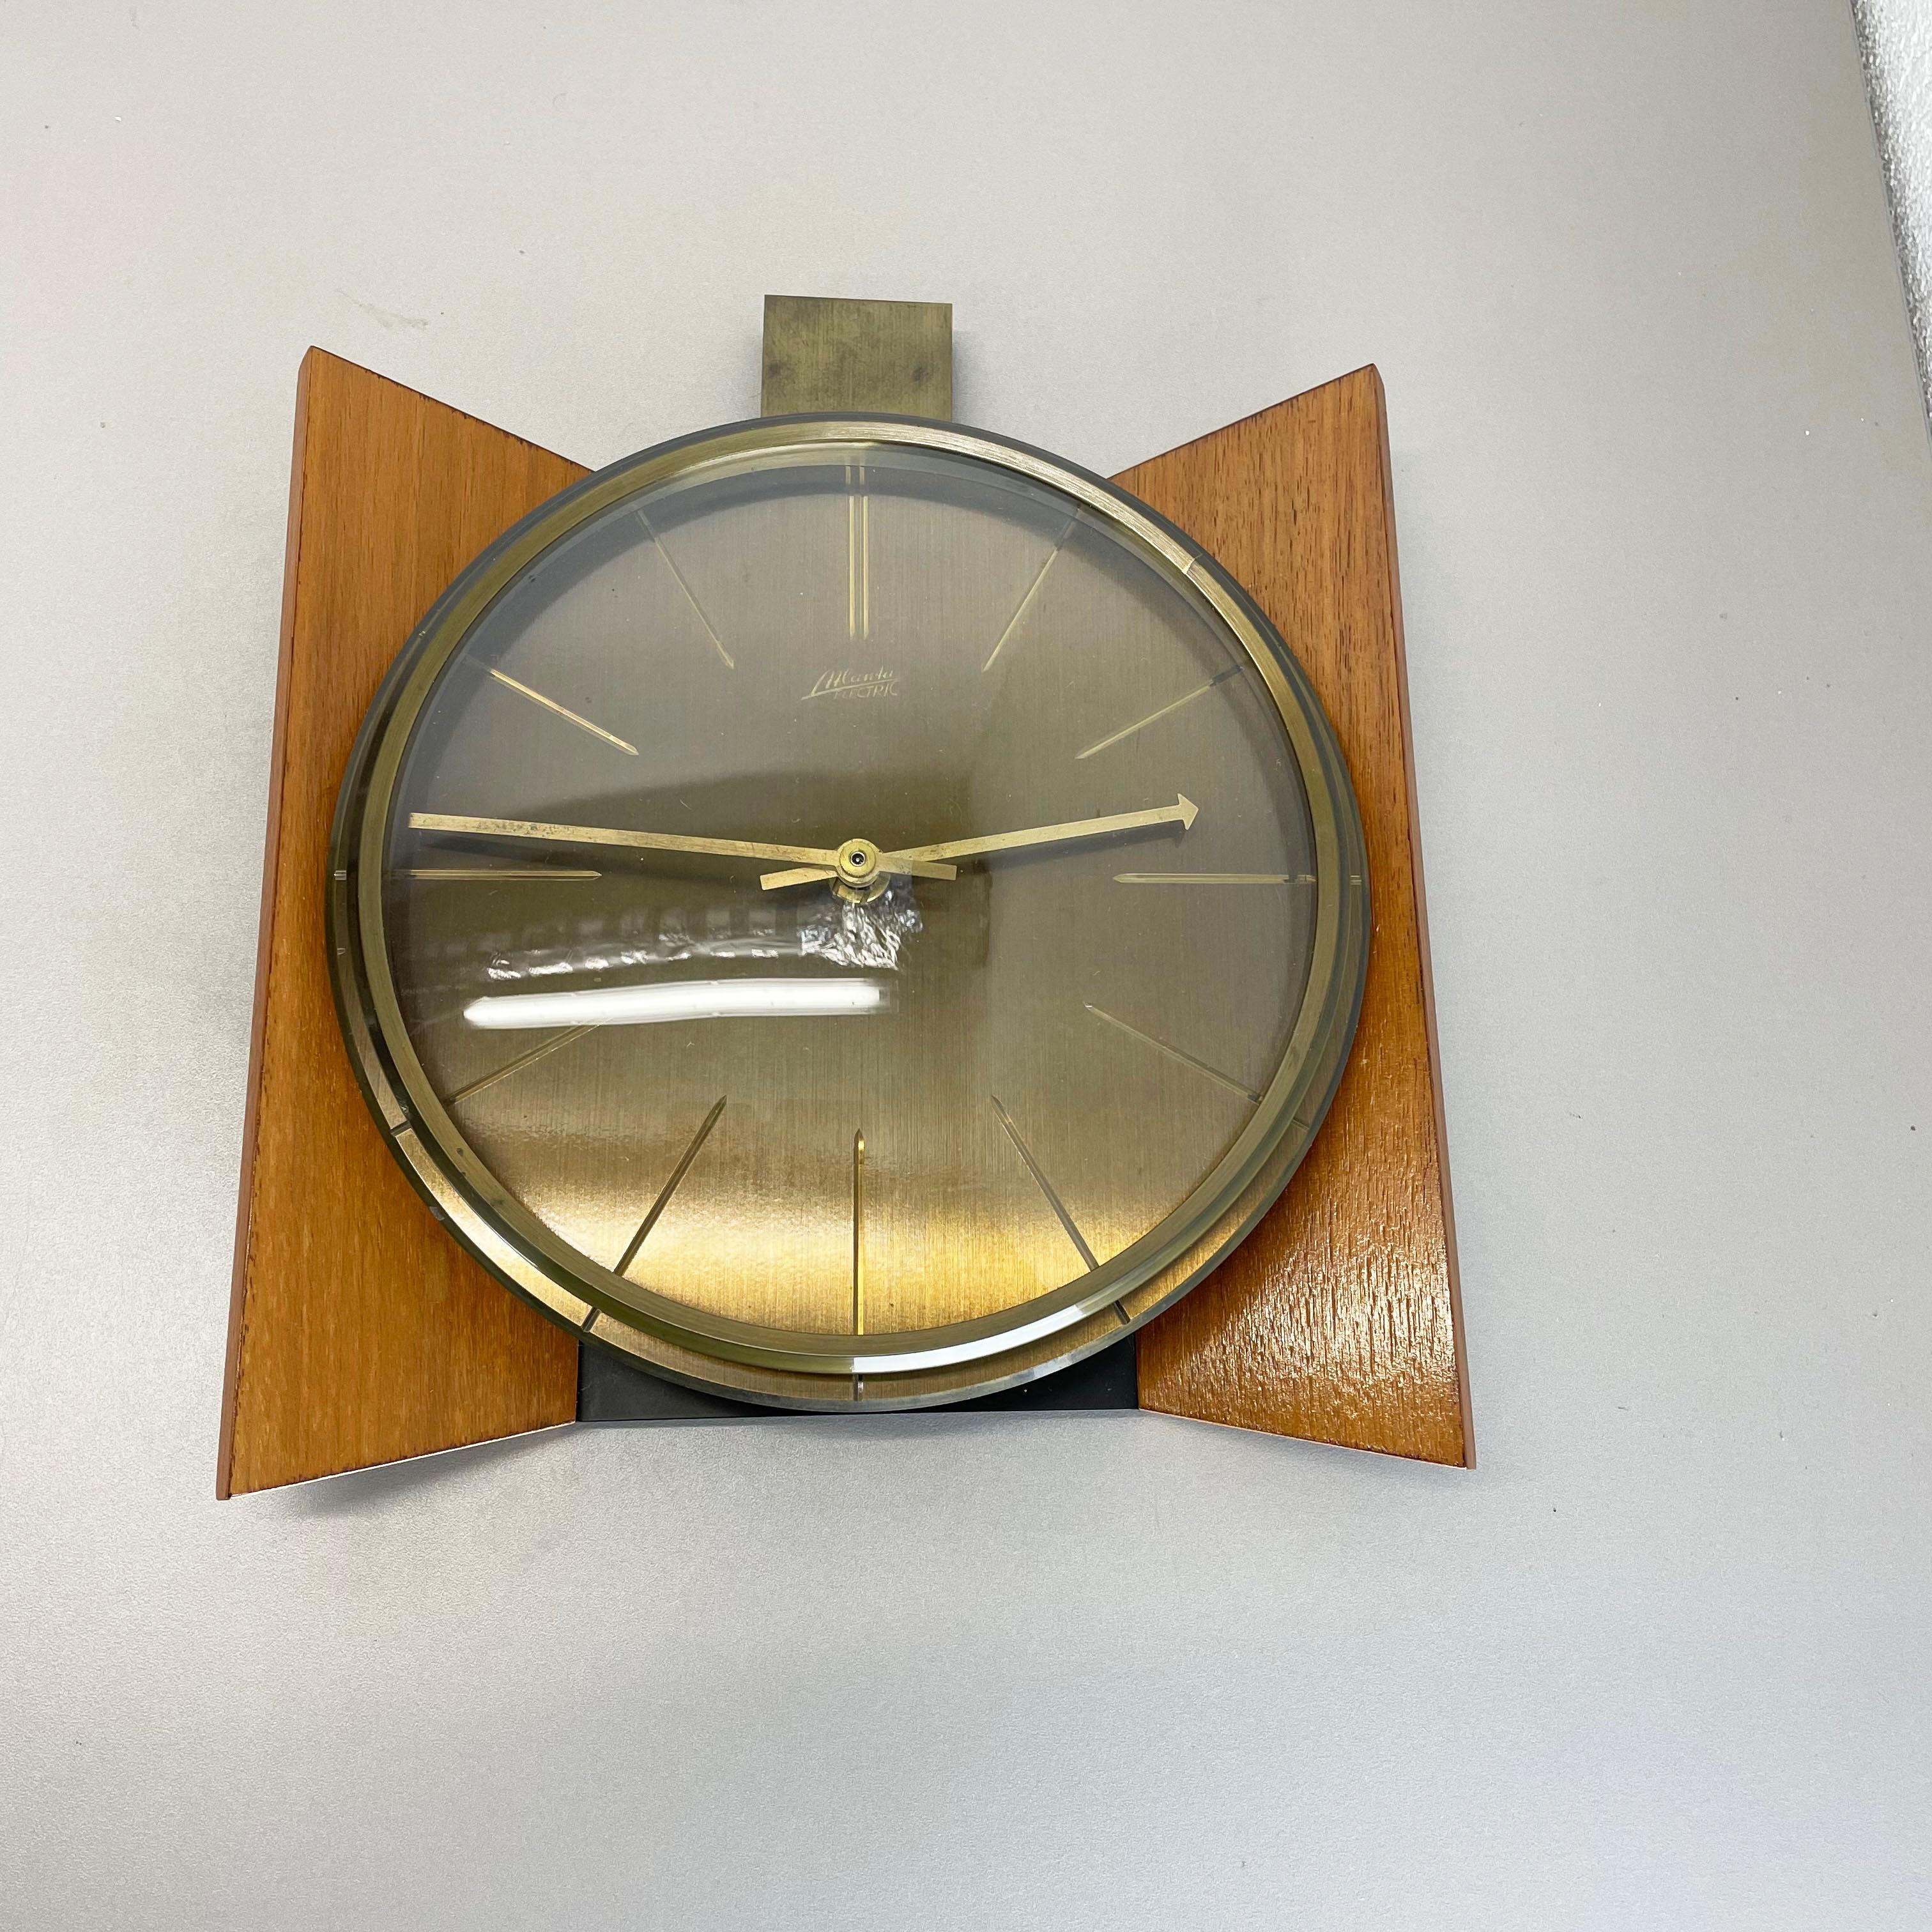 Artikel:

Wanduhr



Herkunft:

Deutschland


Produzent:

Atlanta Electric, Deutschland


Alter:

1960s



Beschreibung:

Diese originelle Vintage-Wanduhr wurde in den 1960er Jahren von dem Premium-Uhrenhersteller Atlanta